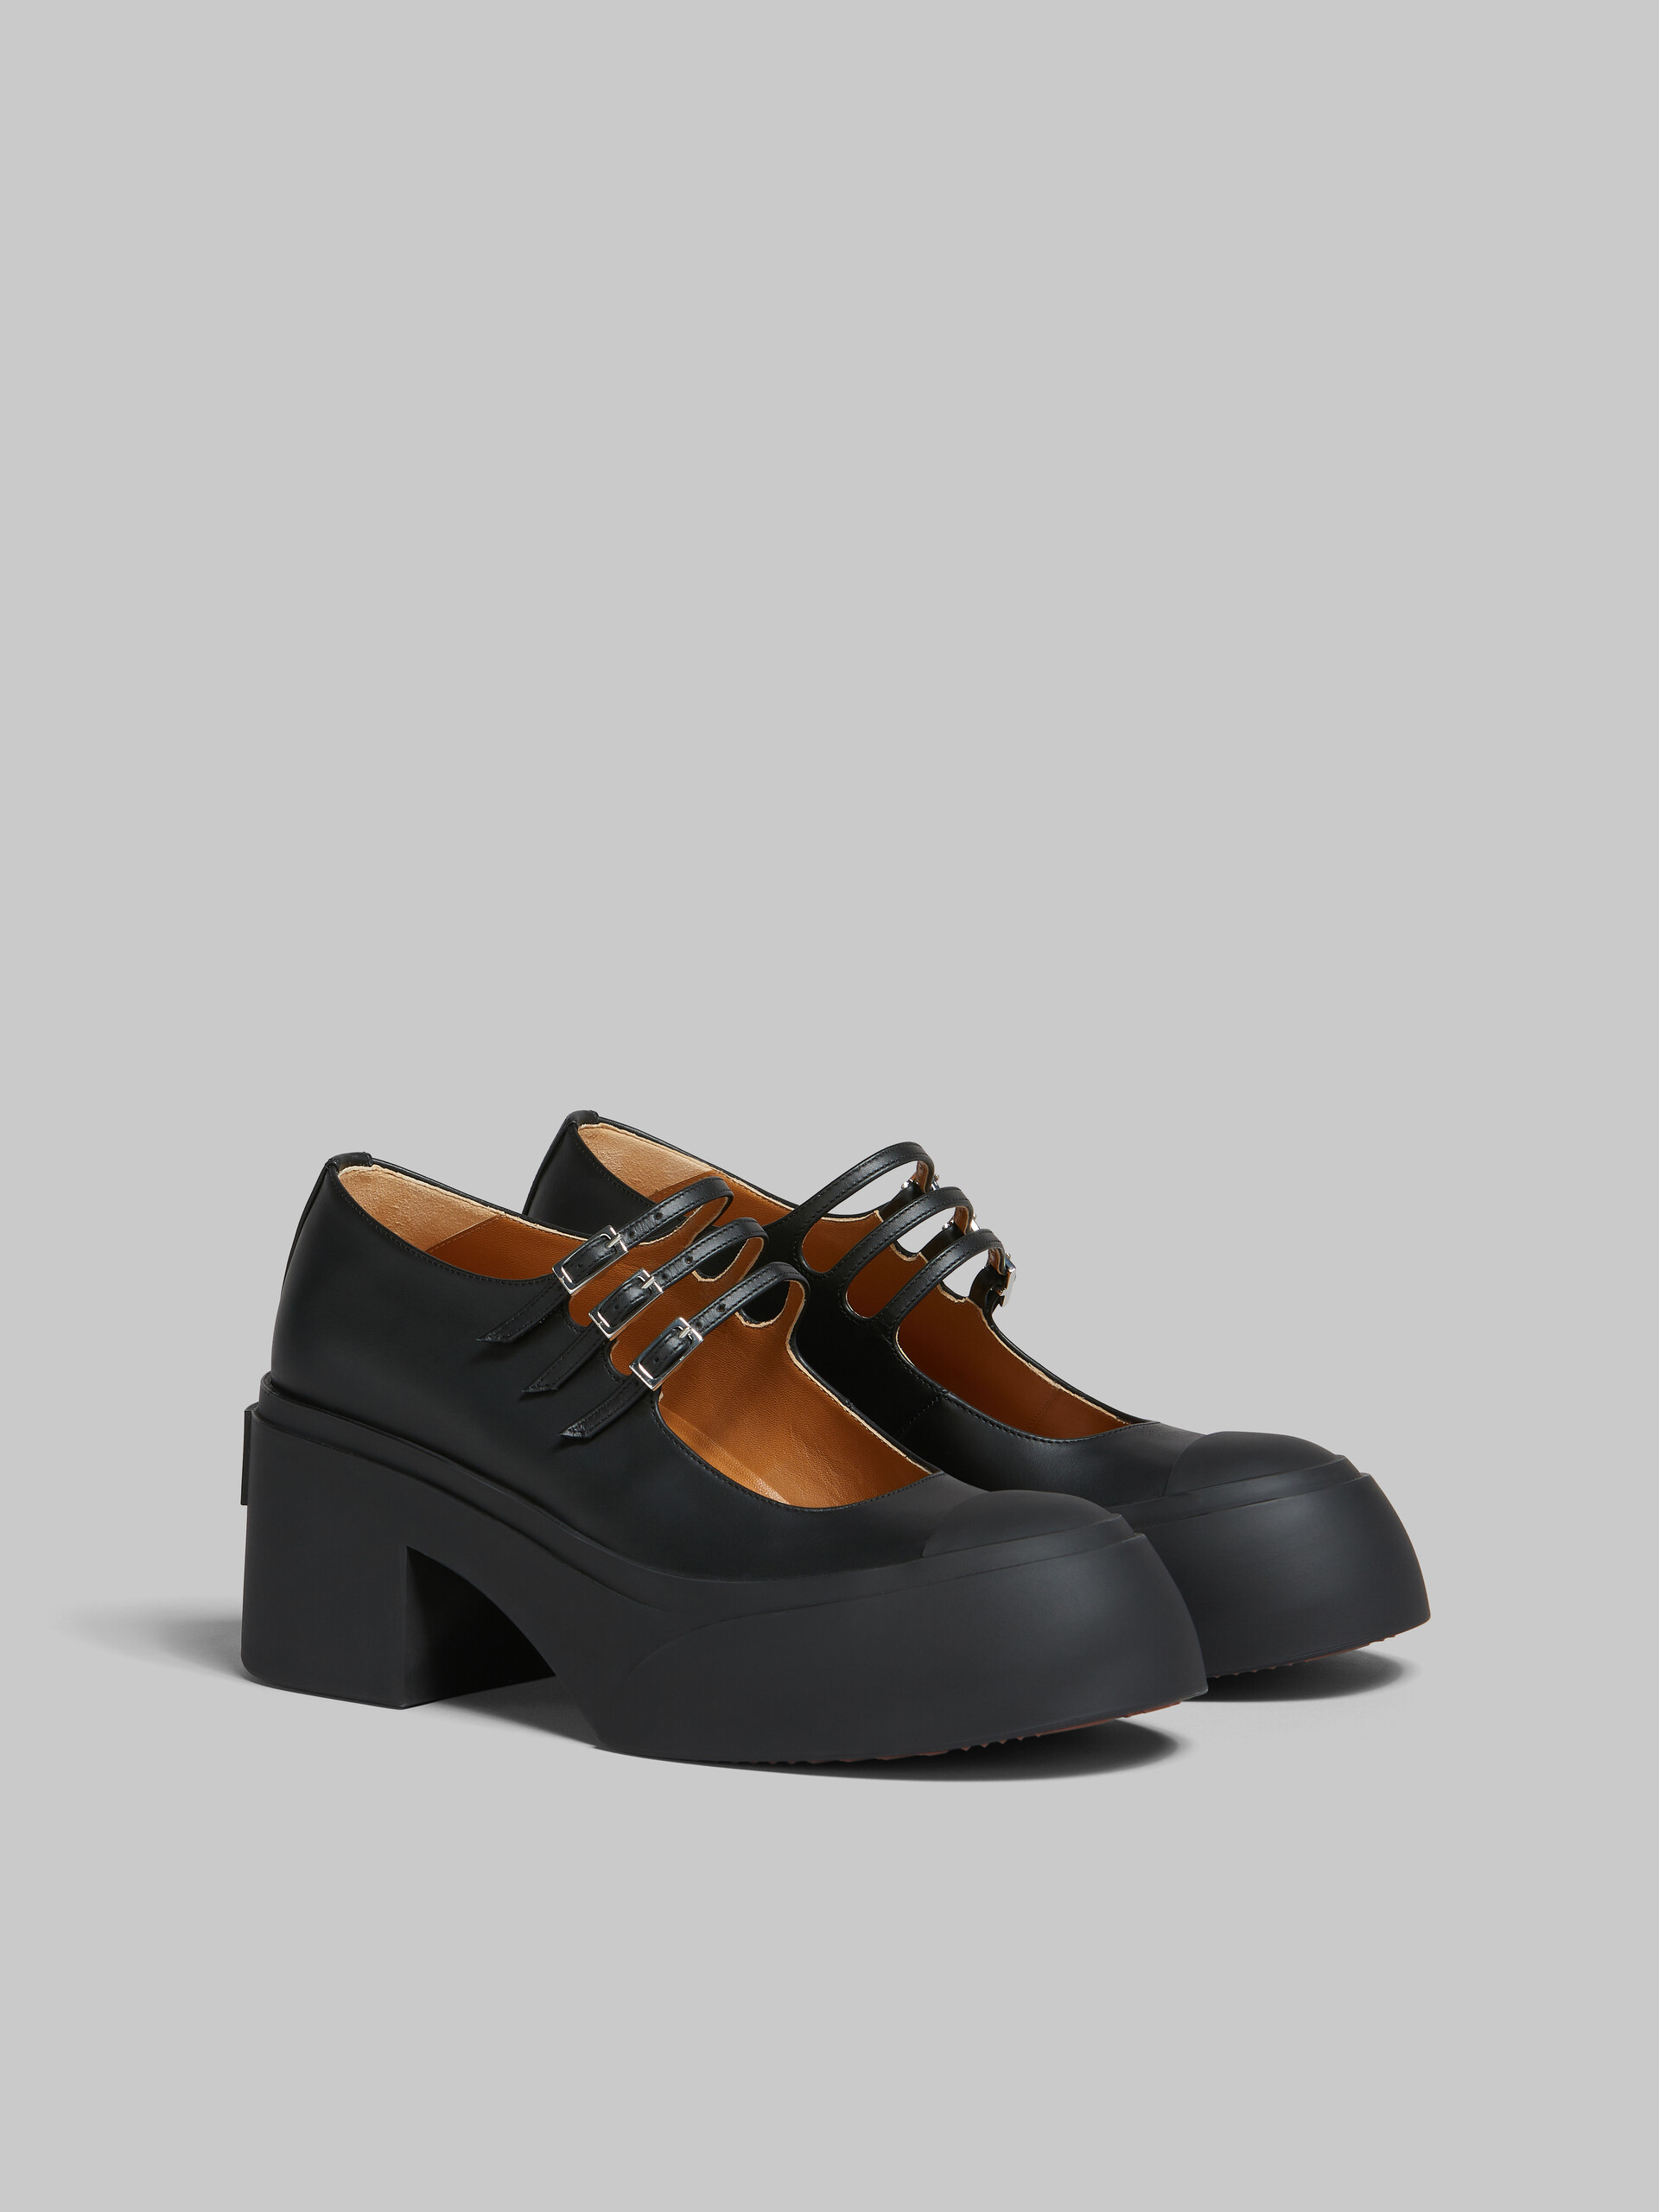 Scarpa Pablo Mary Jane in pelle nera con triplo cinturino - Sneakers - Image 2